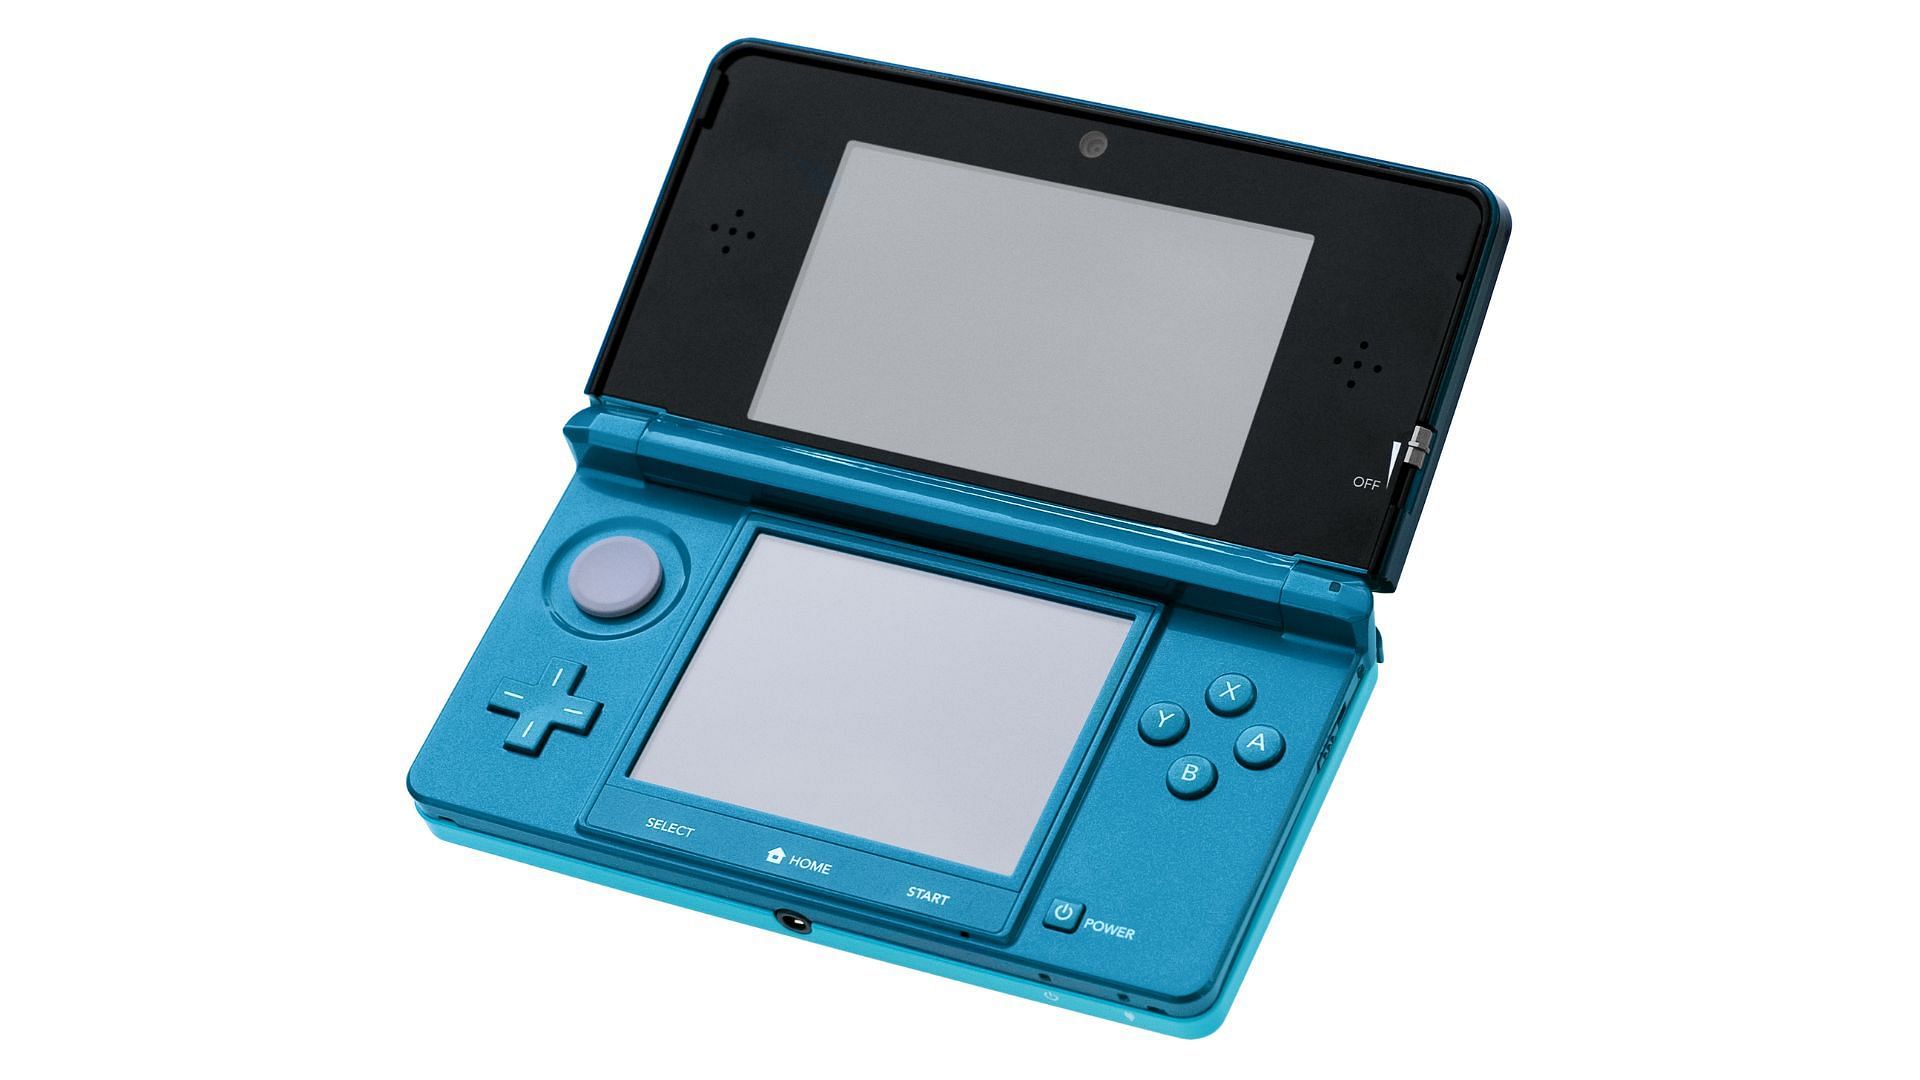 The Nintendo 3DS (Image via Nintendo)